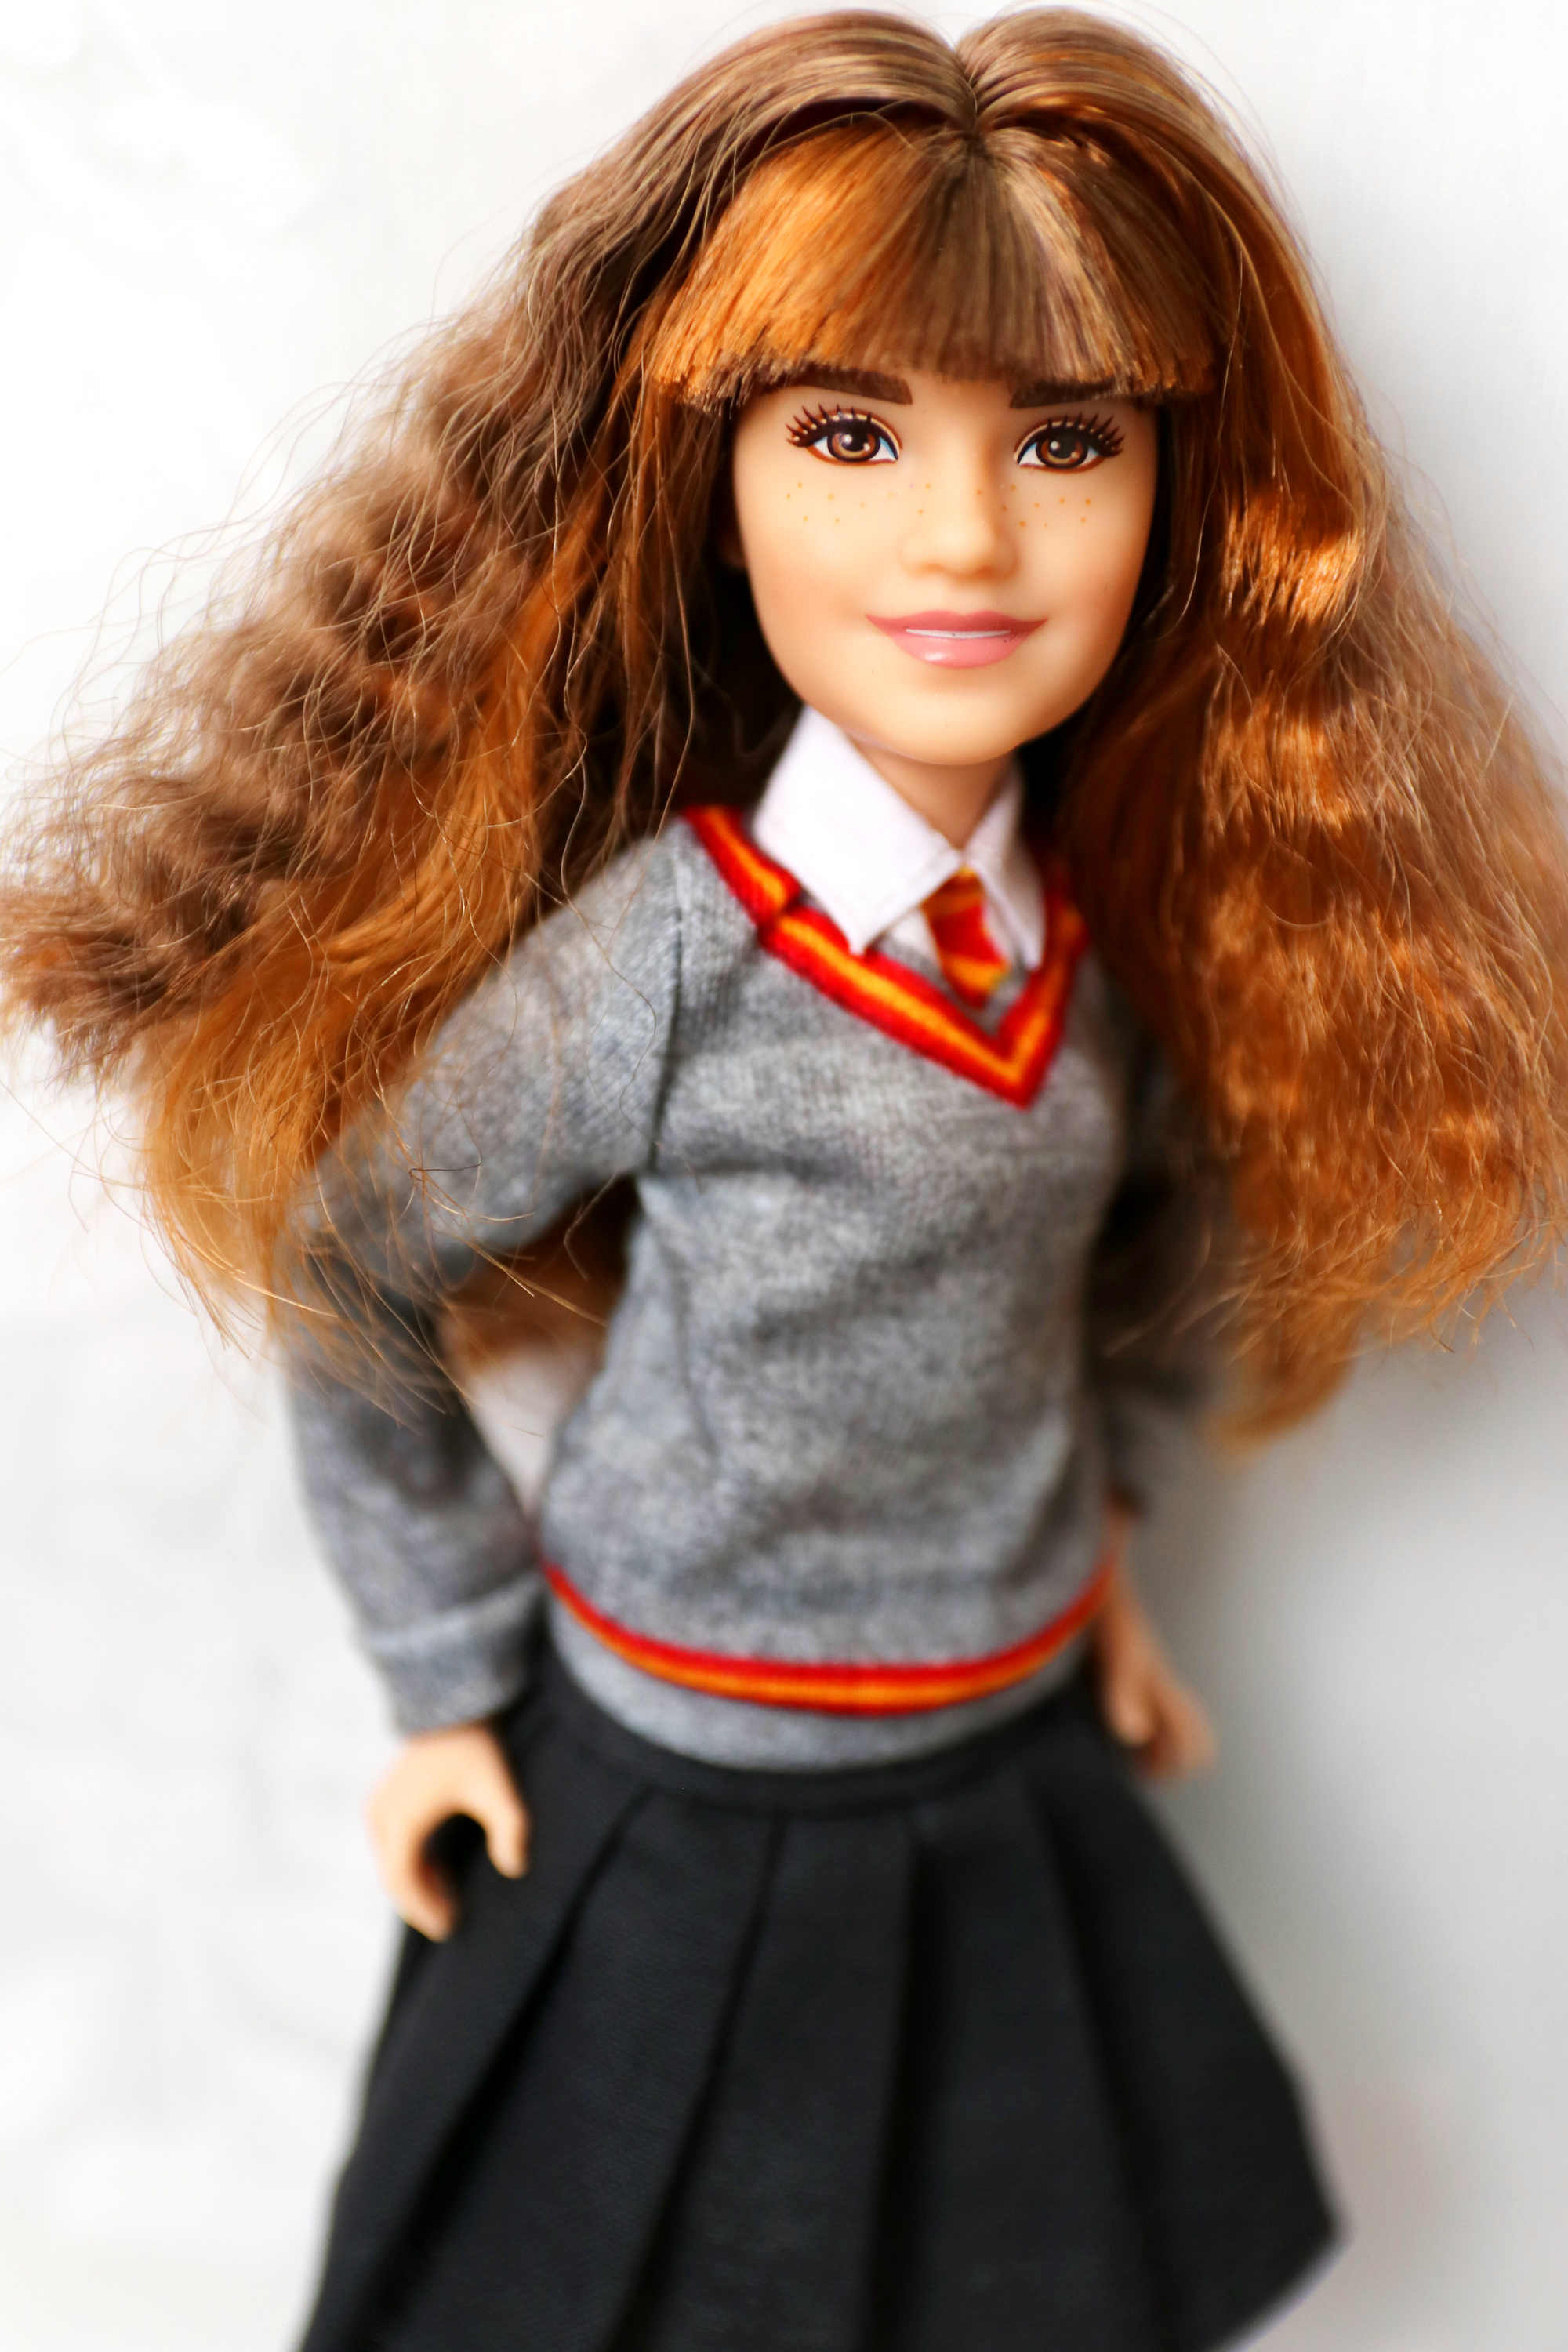 hermione granger doll mattel